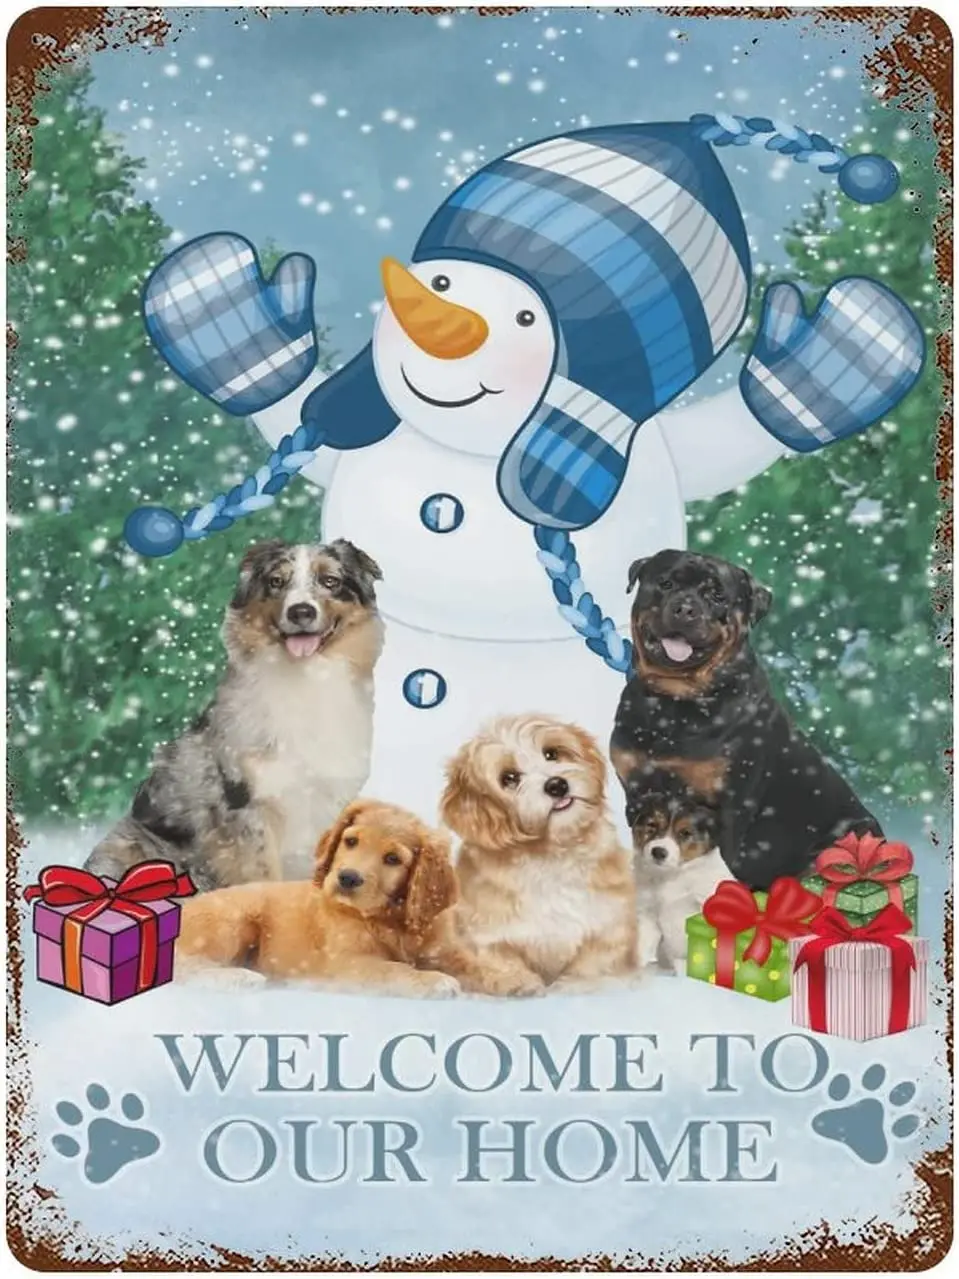 

Металлические знаки, забавные, добро пожаловать в наш дом, алюминиевая вывеска 12x16 дюймов, милые собаки и снеговик, искусственная кожа, винтажный декор для бара